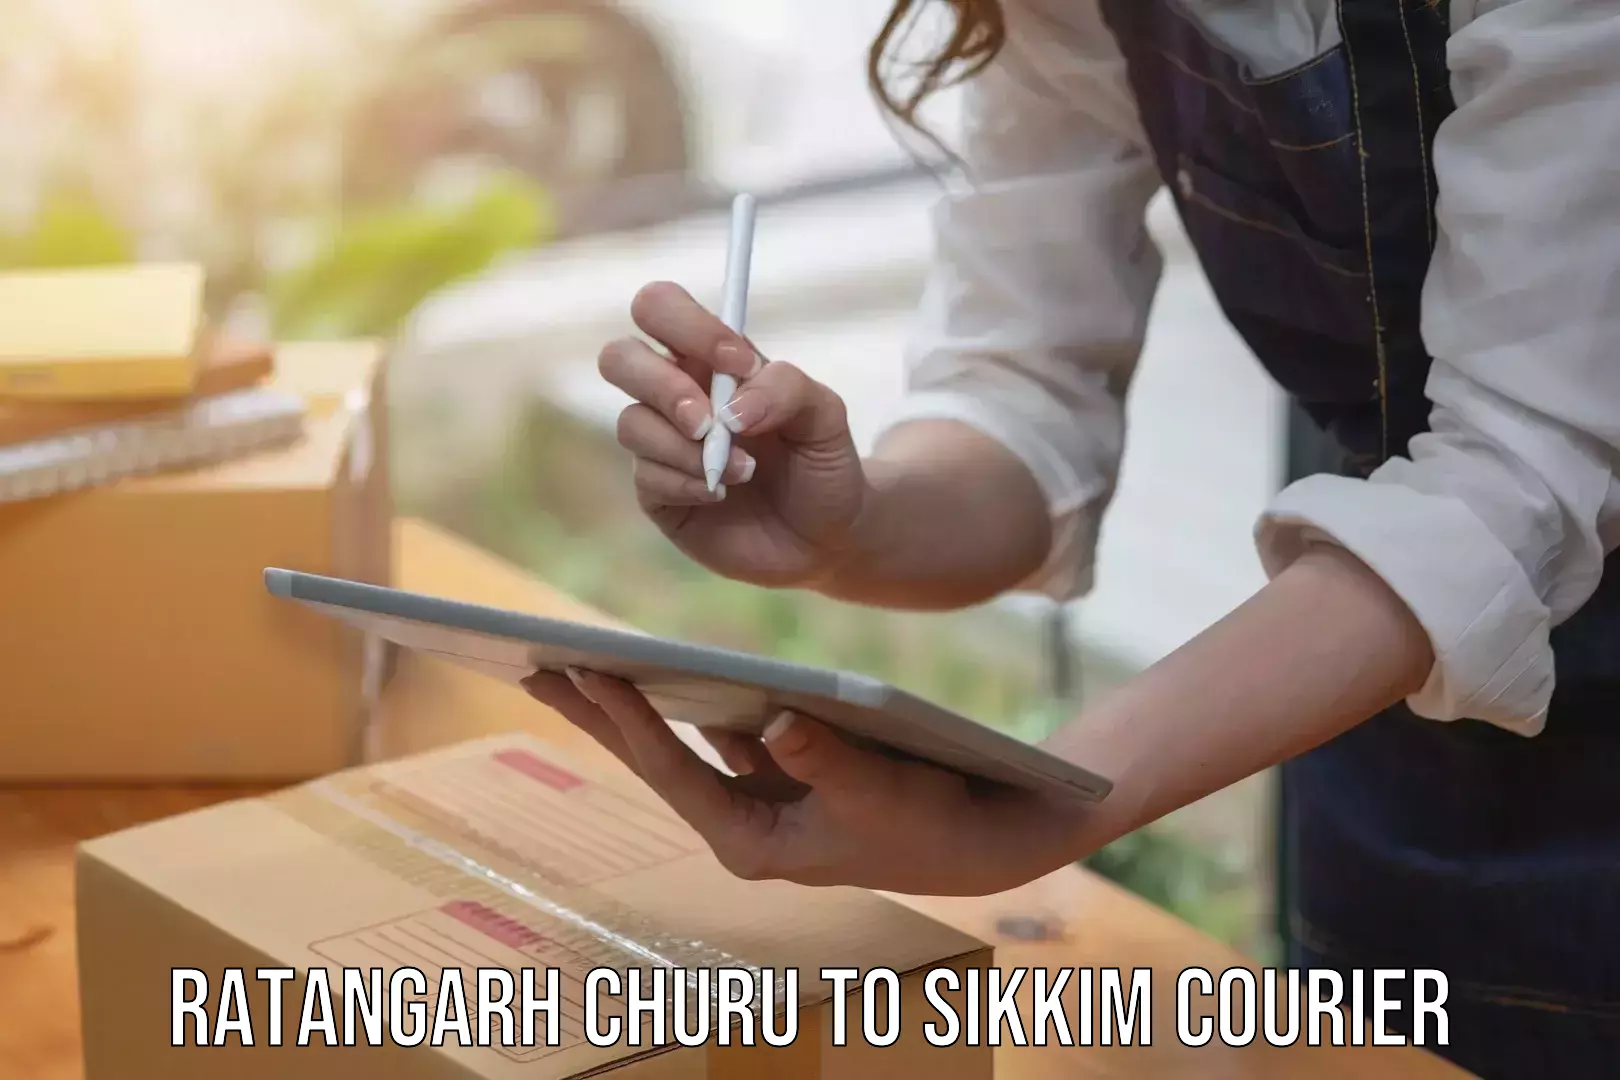 Discount courier rates Ratangarh Churu to NIT Sikkim